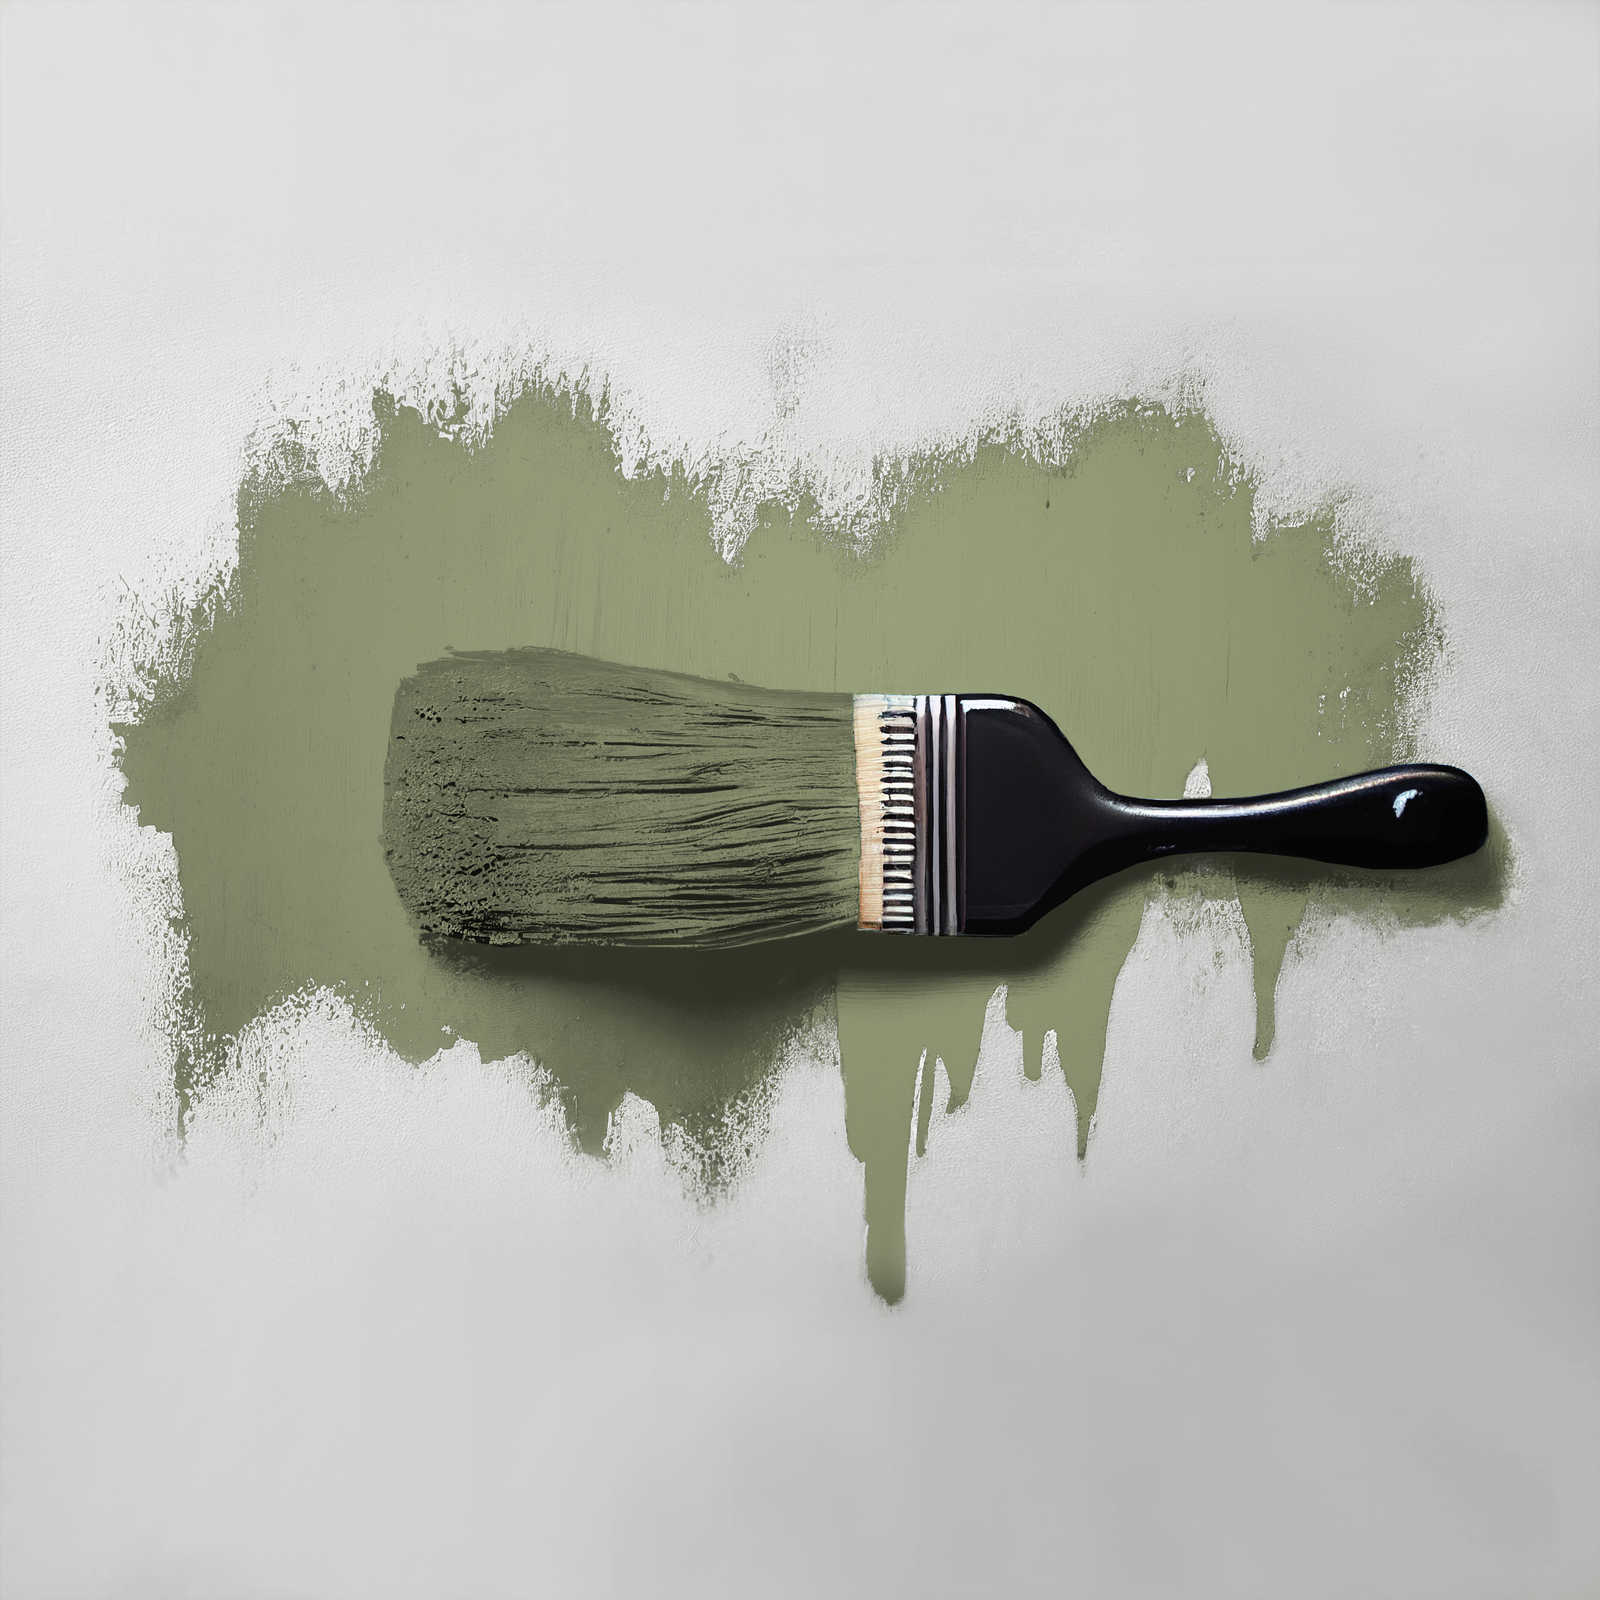             Wandfarbe in wohnlichem Grün »Balmy Basil« TCK4002 – 5 Liter
        